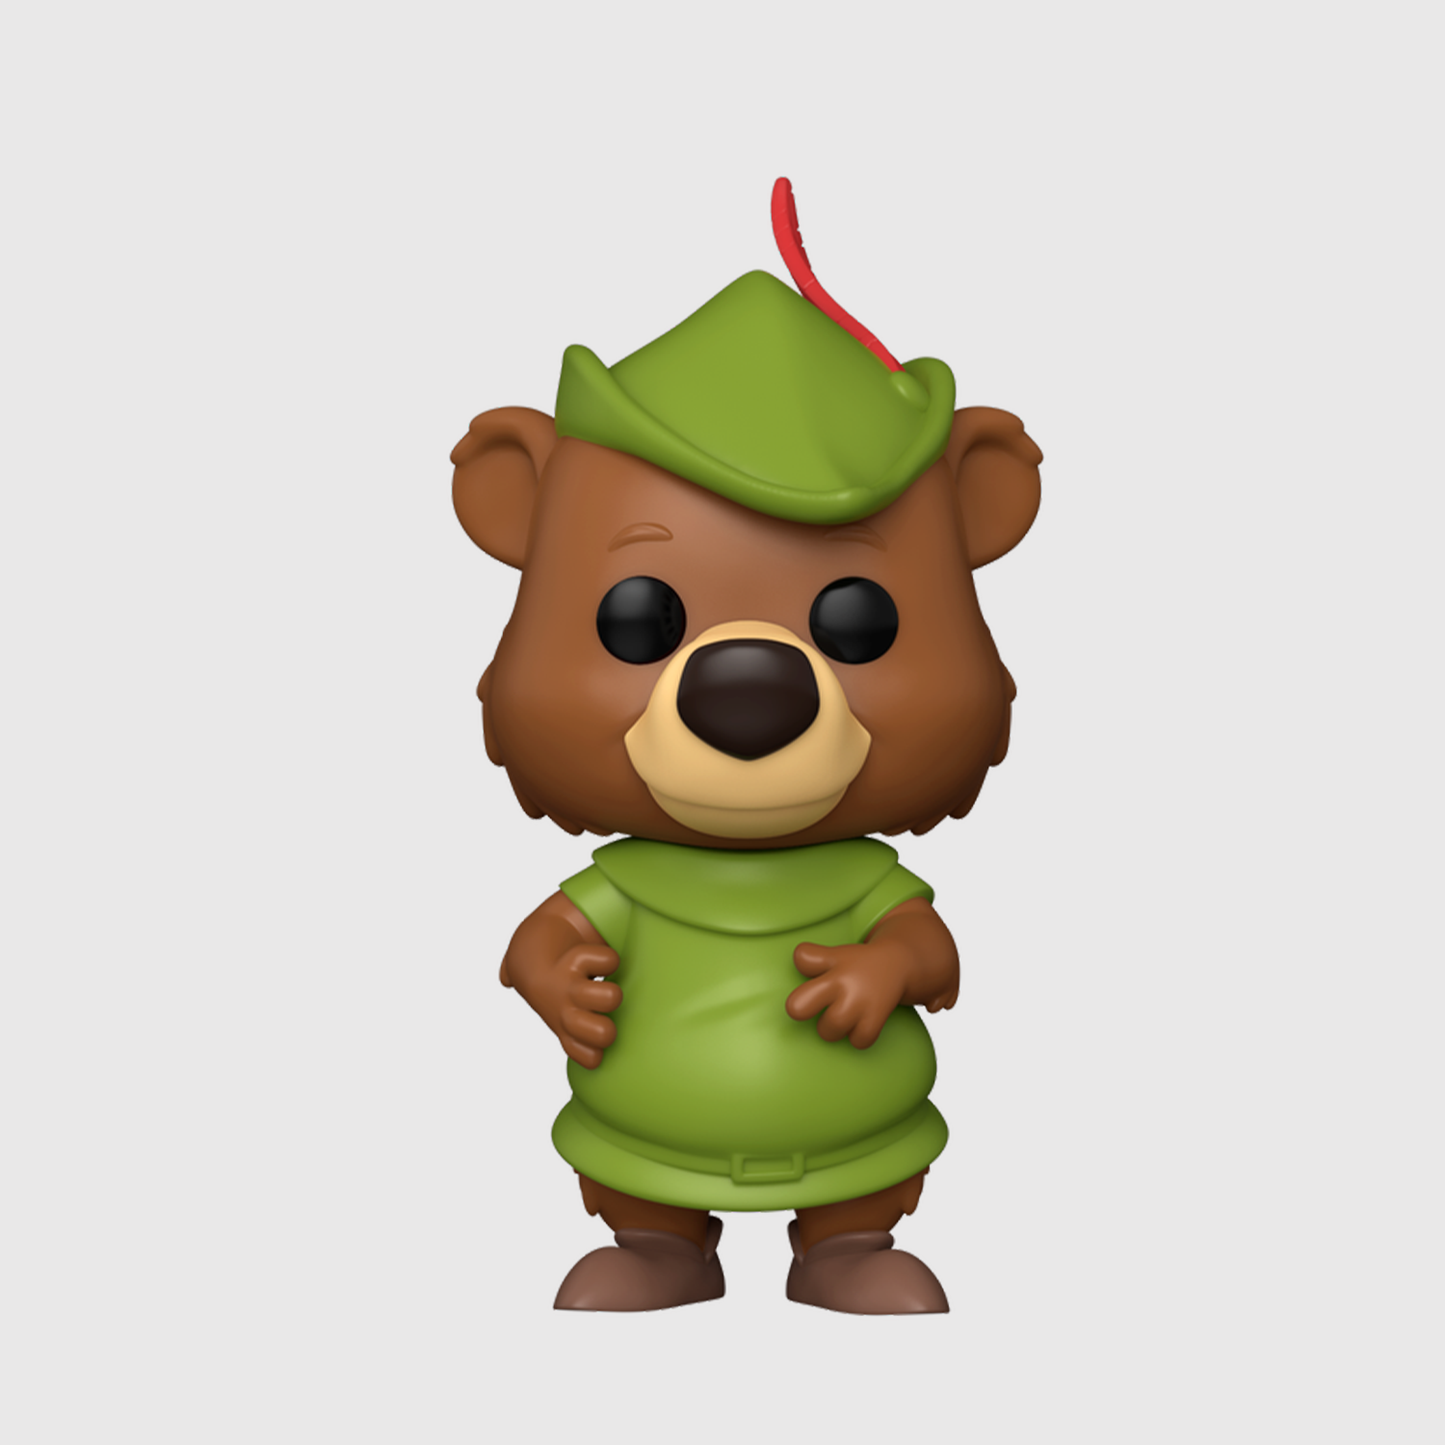 (PRE-ORDER) Funko POP! Disney: Robin Hood - Little John #1437